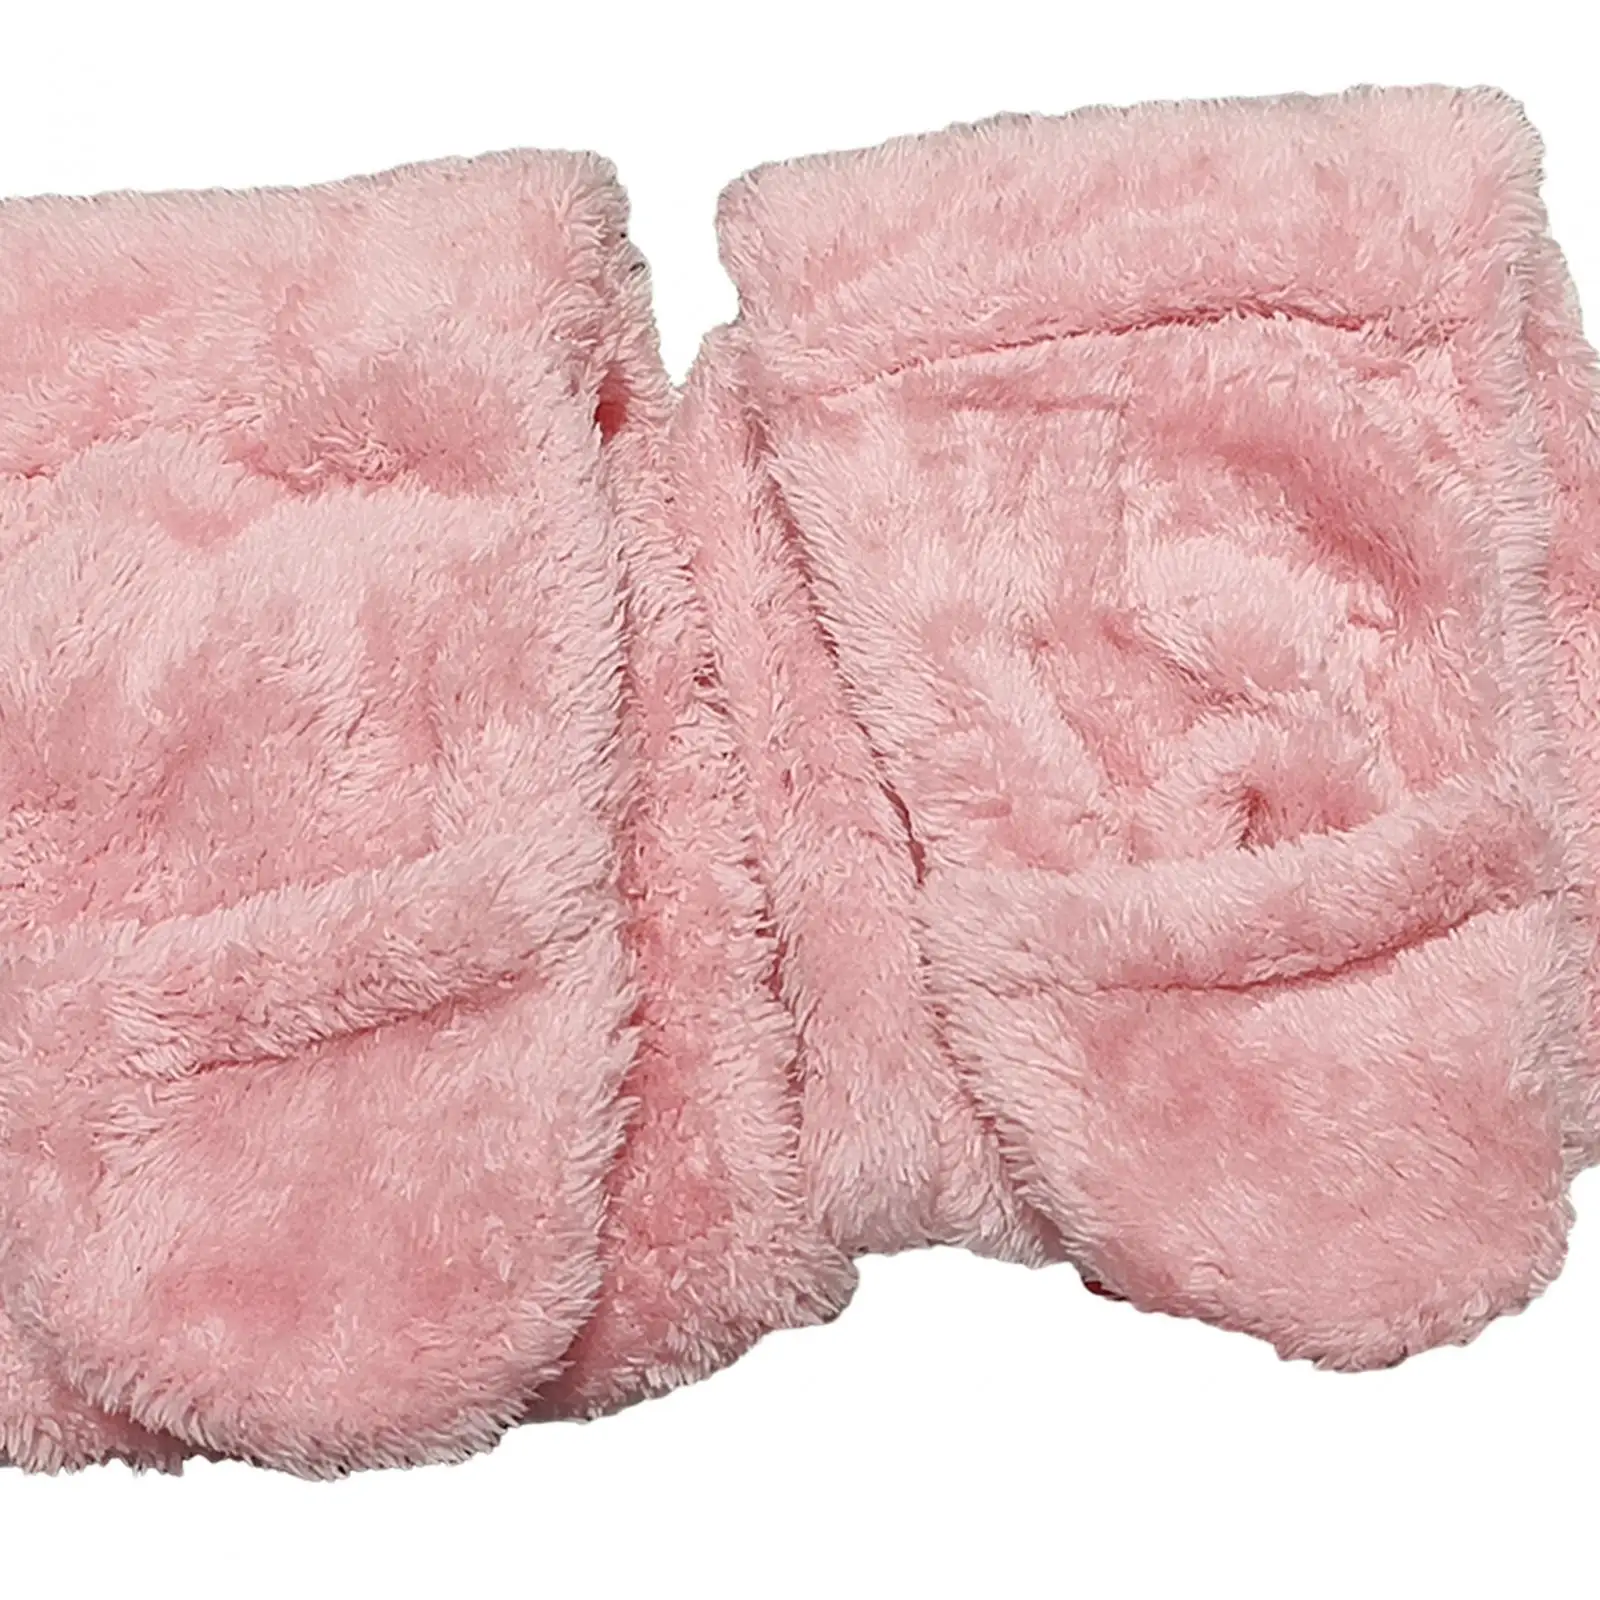 over Knee High Fuzzy Socks Soft for Women Girls Lady Cozy Winter Home Sleeping Socks Plush Slipper Stockings for Bedroom Office